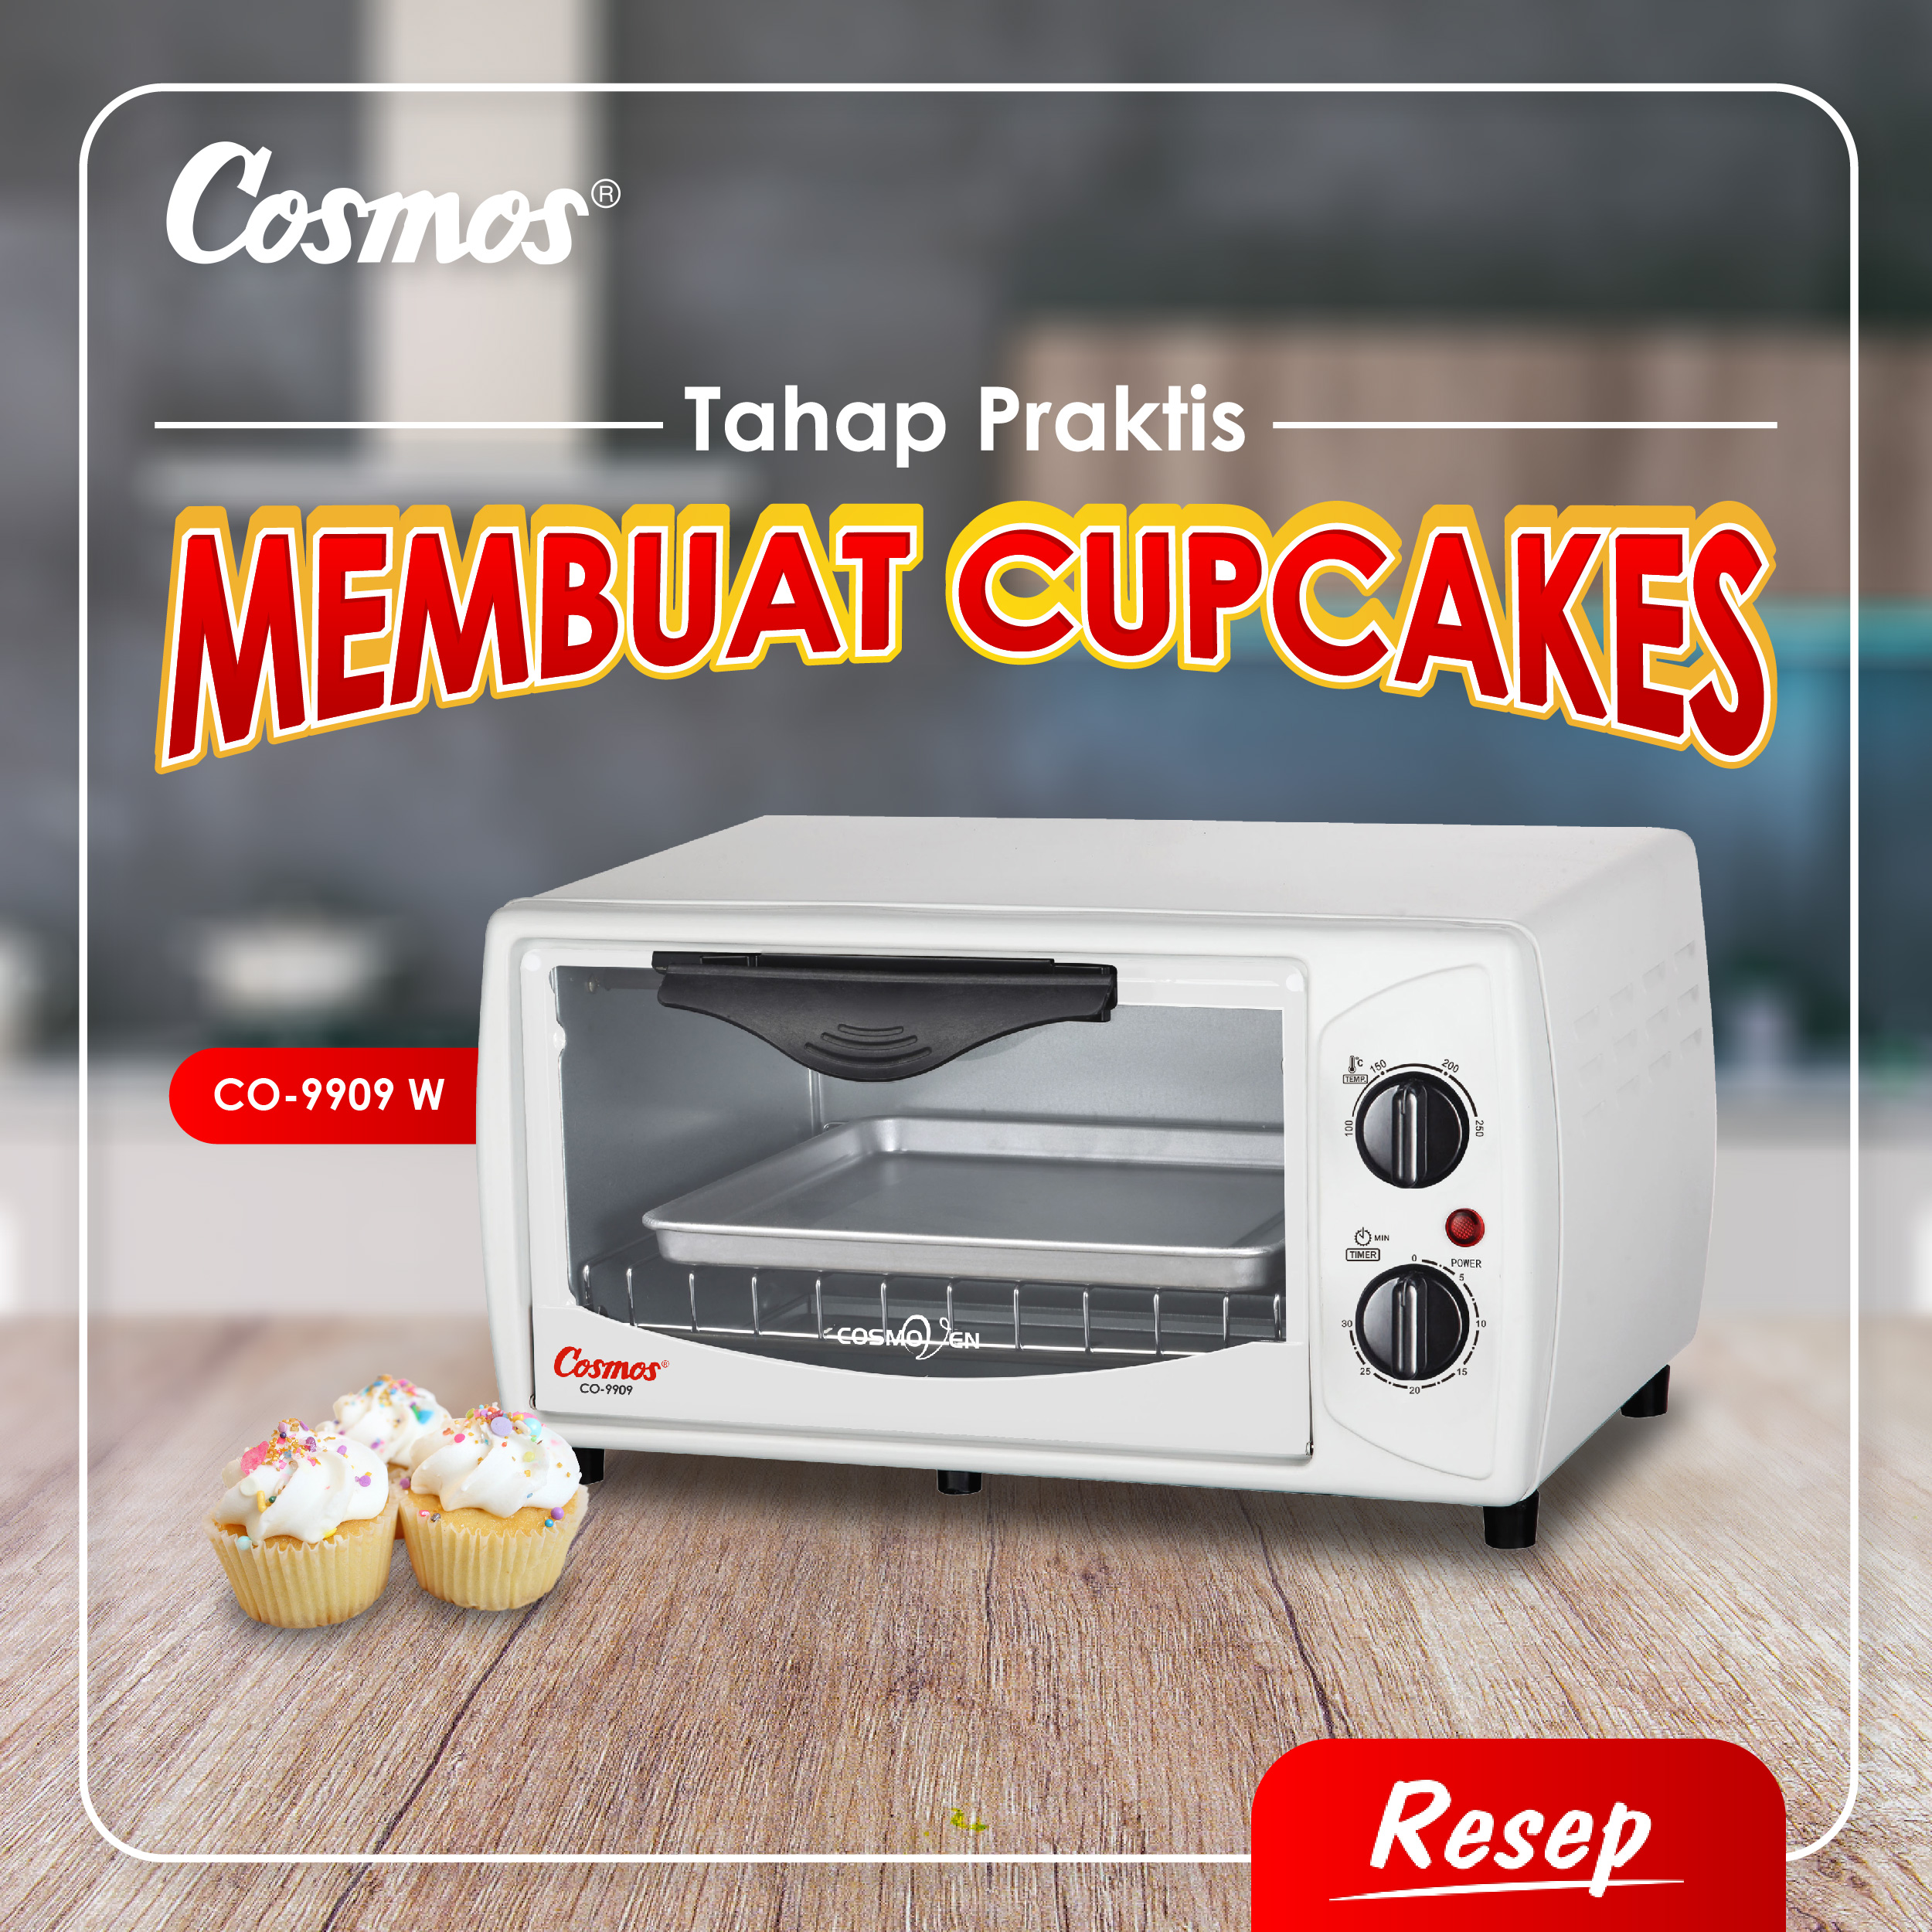 Tahap Praktis Membuat Cupcakes (Tips Cosmos Oven CO-9909)